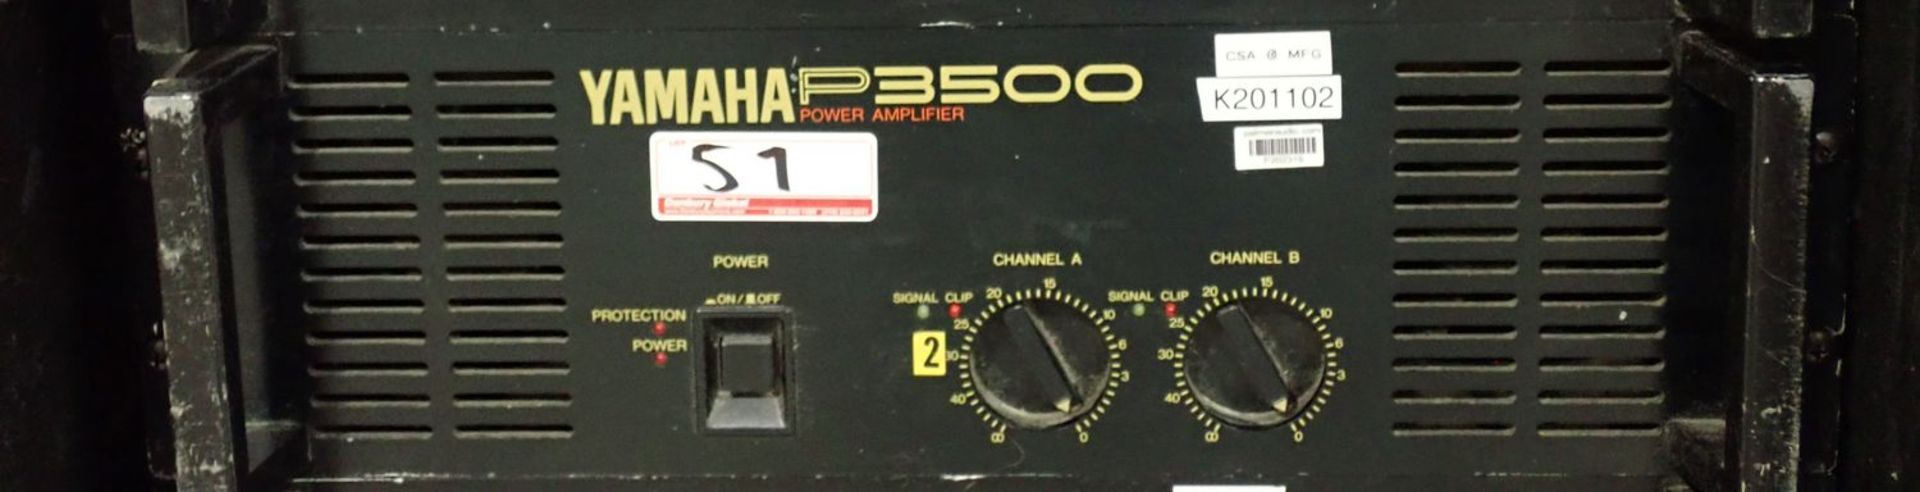 YAMAHA P3500 2-CH POWER AMPLIFIER